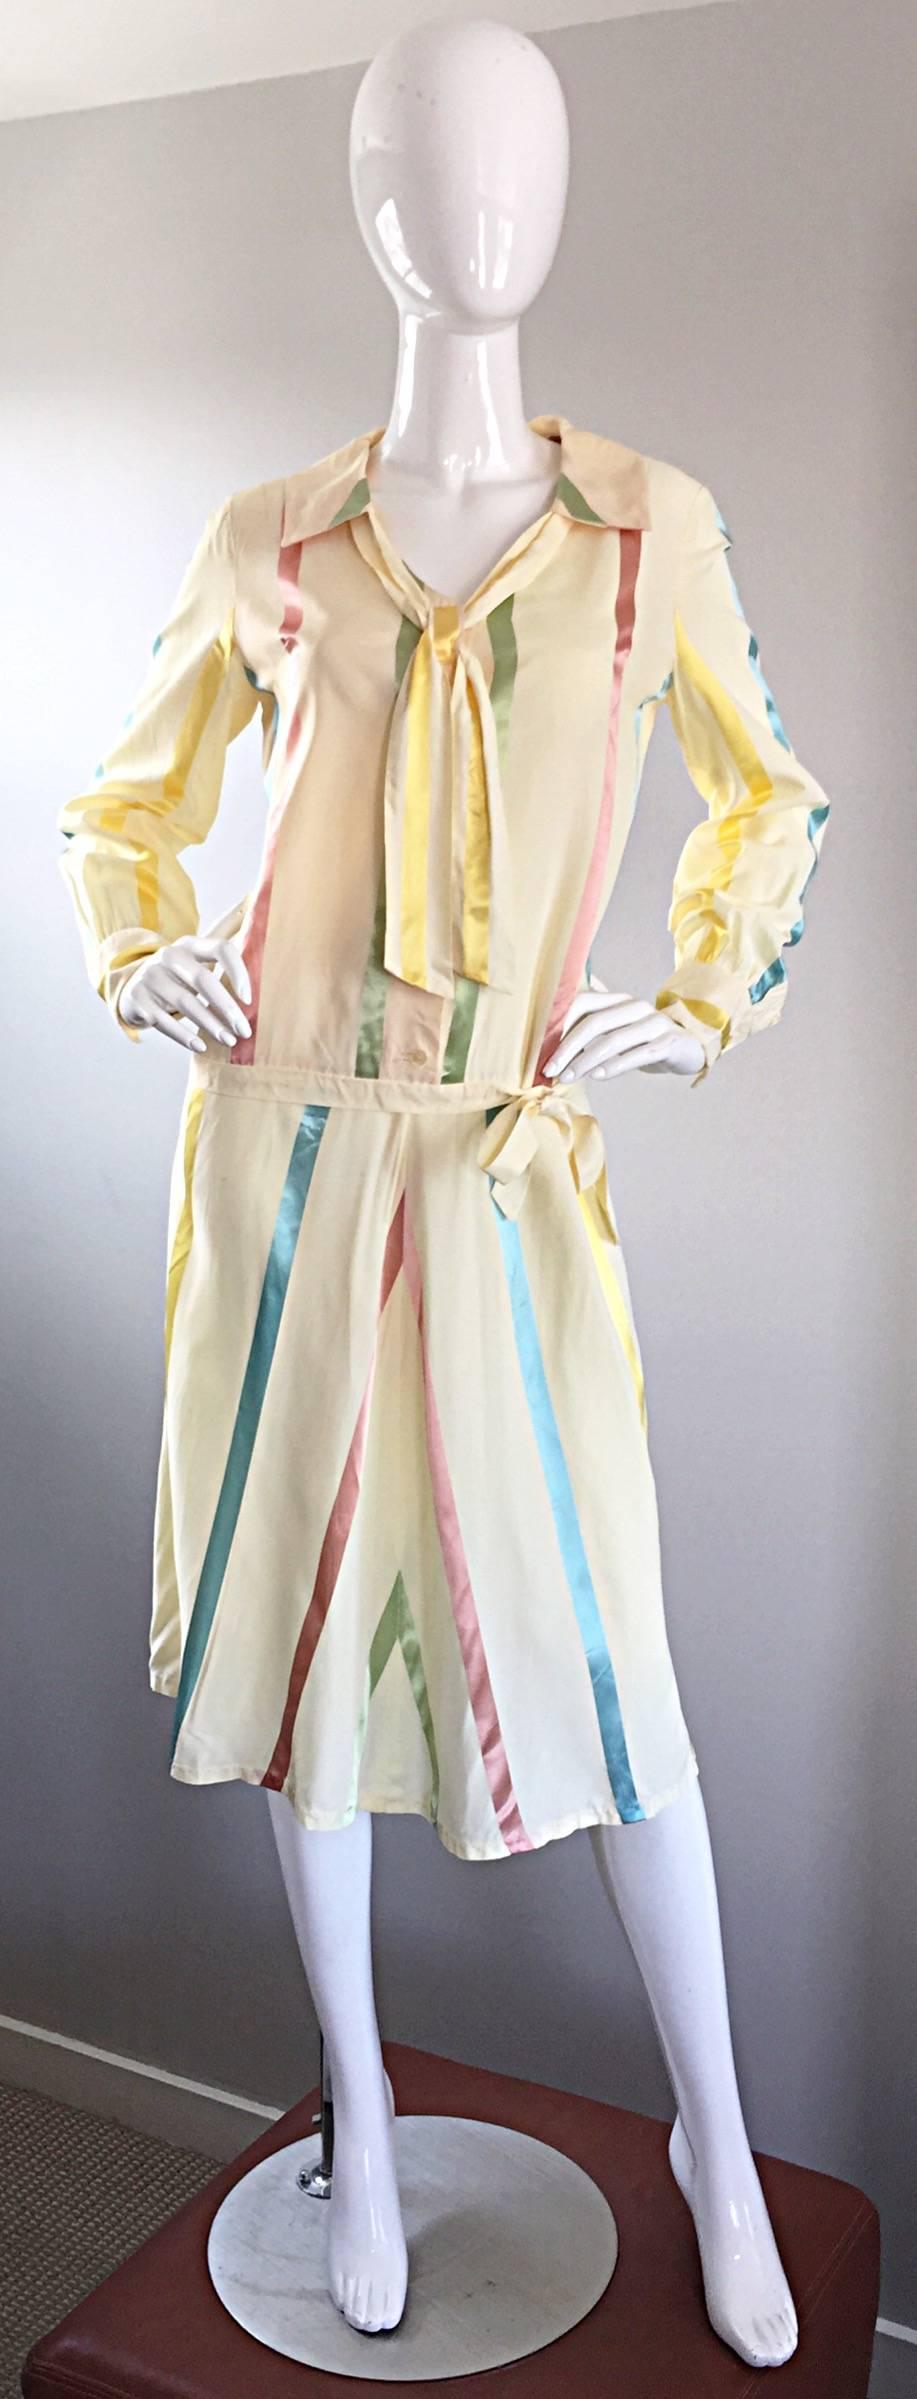 Incroyablement chic robe vintage en soie des années 20 ! Style classique à taille basse avec un nœud latéral à la taille. Attache à l'encolure. Soie ivoire avec des rayures verticales bleu pastel, rose, jaune et vert sur toute la surface.